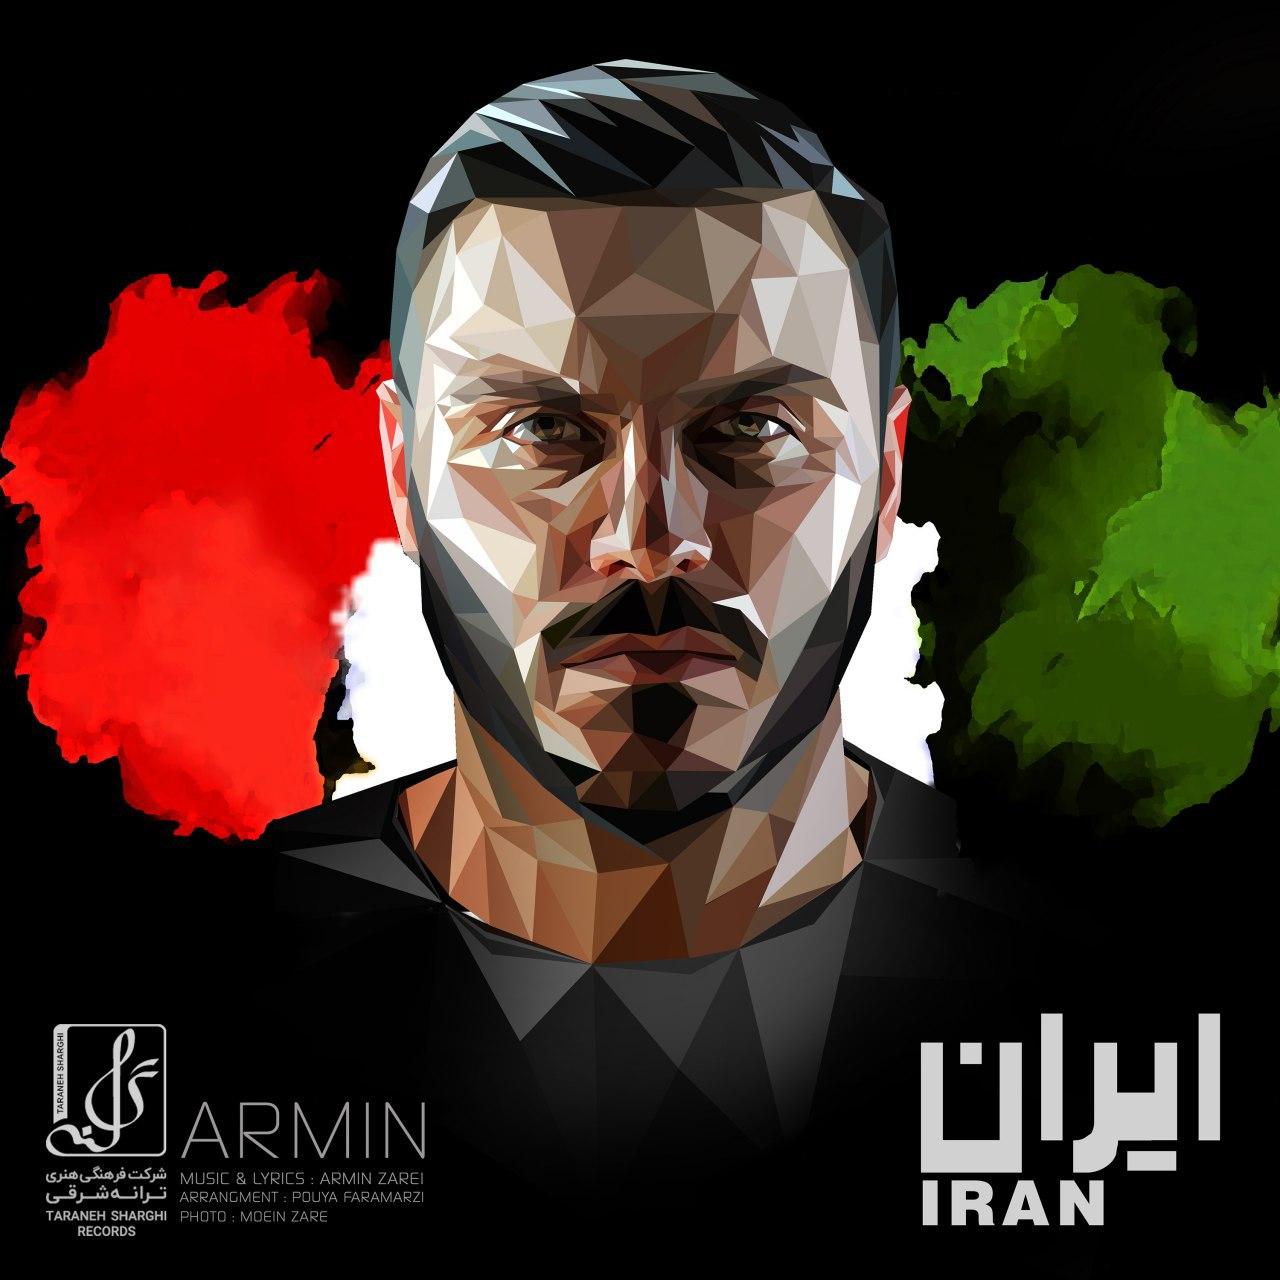 دانلود آهنگ جدید آرمین ۲Afm به نام ایران